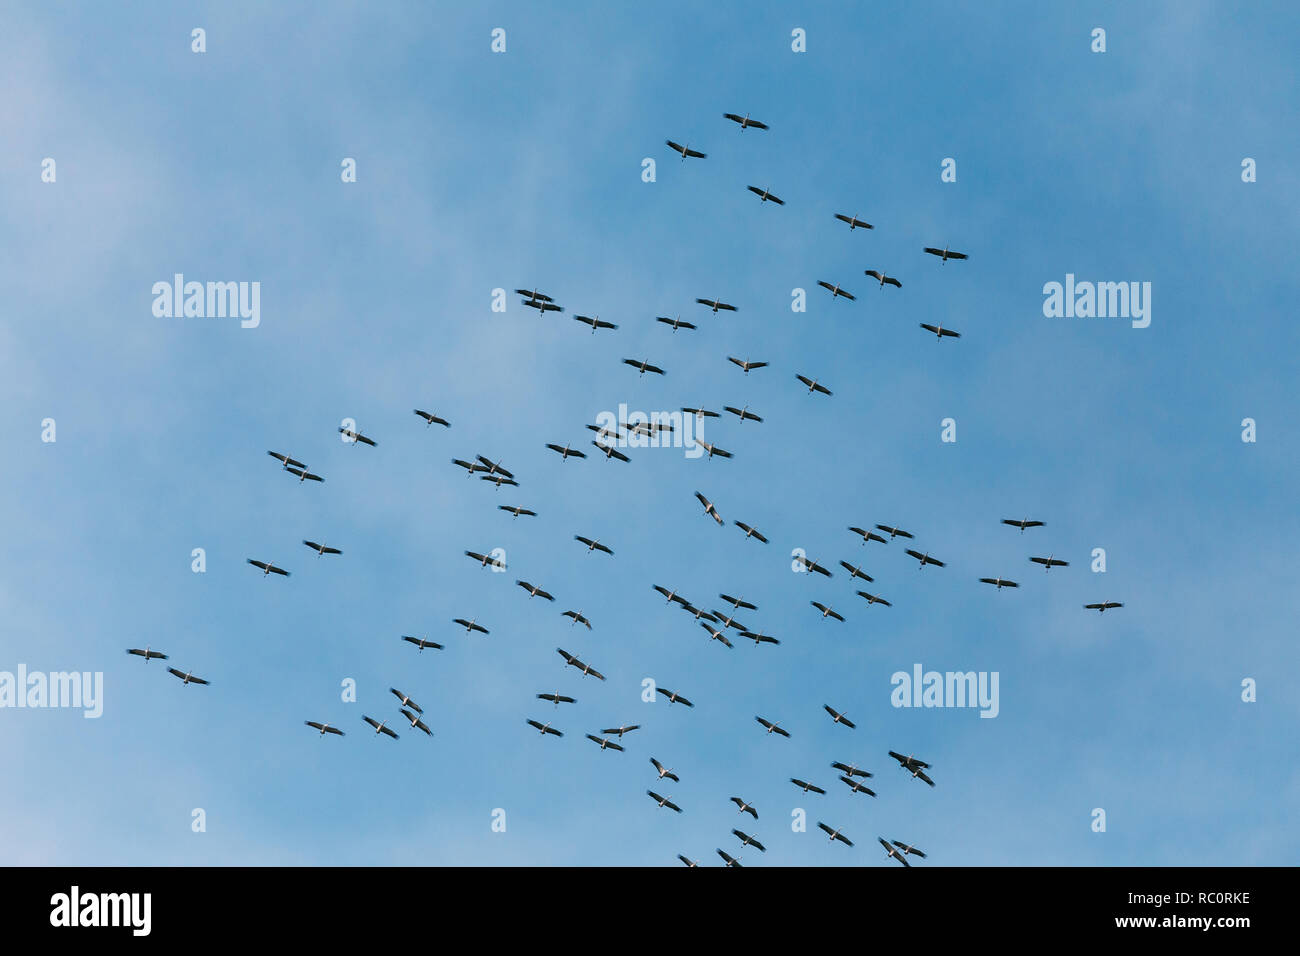 Belarus. Scharen von Kranichen oder Eurasische Kraniche fliegen In sonnigen blauen Herbsthimmel während ihrer Winter Migration. Gemeinsame Kran oder Grus Grus. Stockfoto